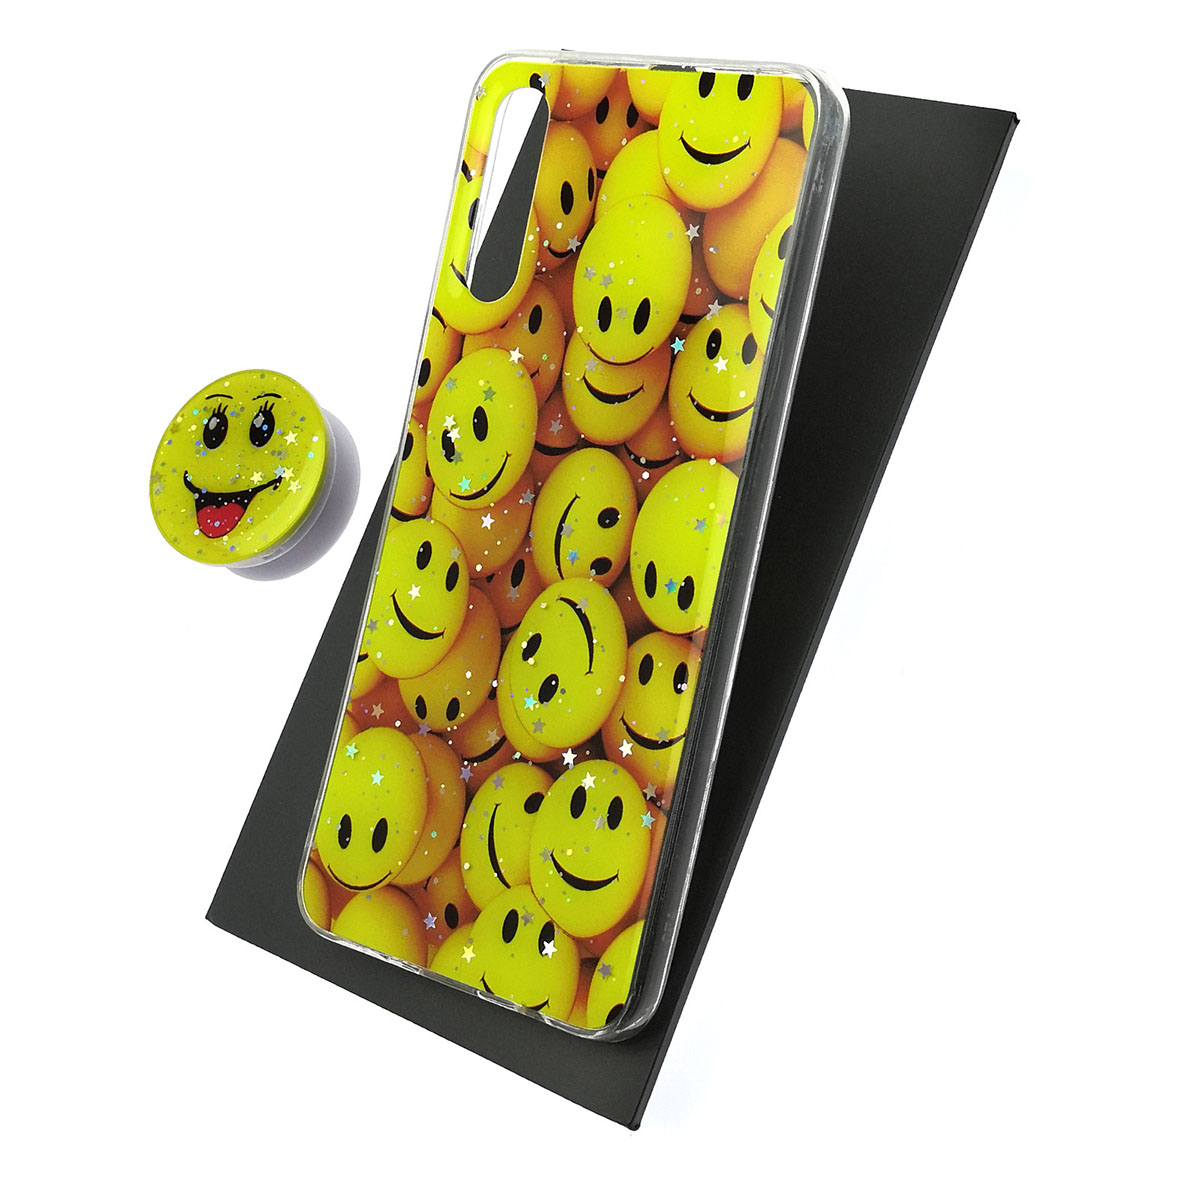 Чехол накладка для SAMSUNG Galaxy A50 (SM-A505), A30s (SM-A307), A50s (SM-A507), силикон, фактурный глянец, с поп сокетом, рисунок Smile